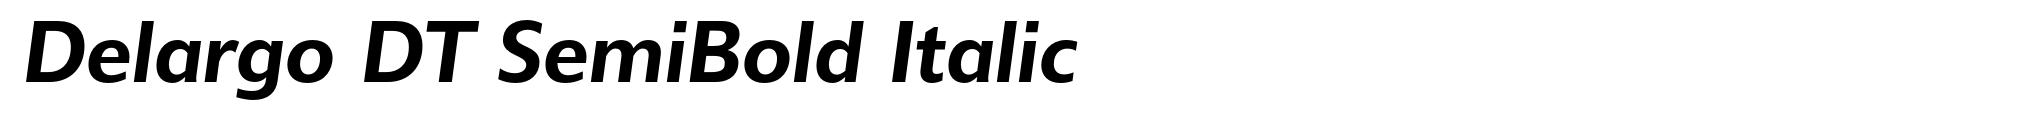 Delargo DT SemiBold Italic image